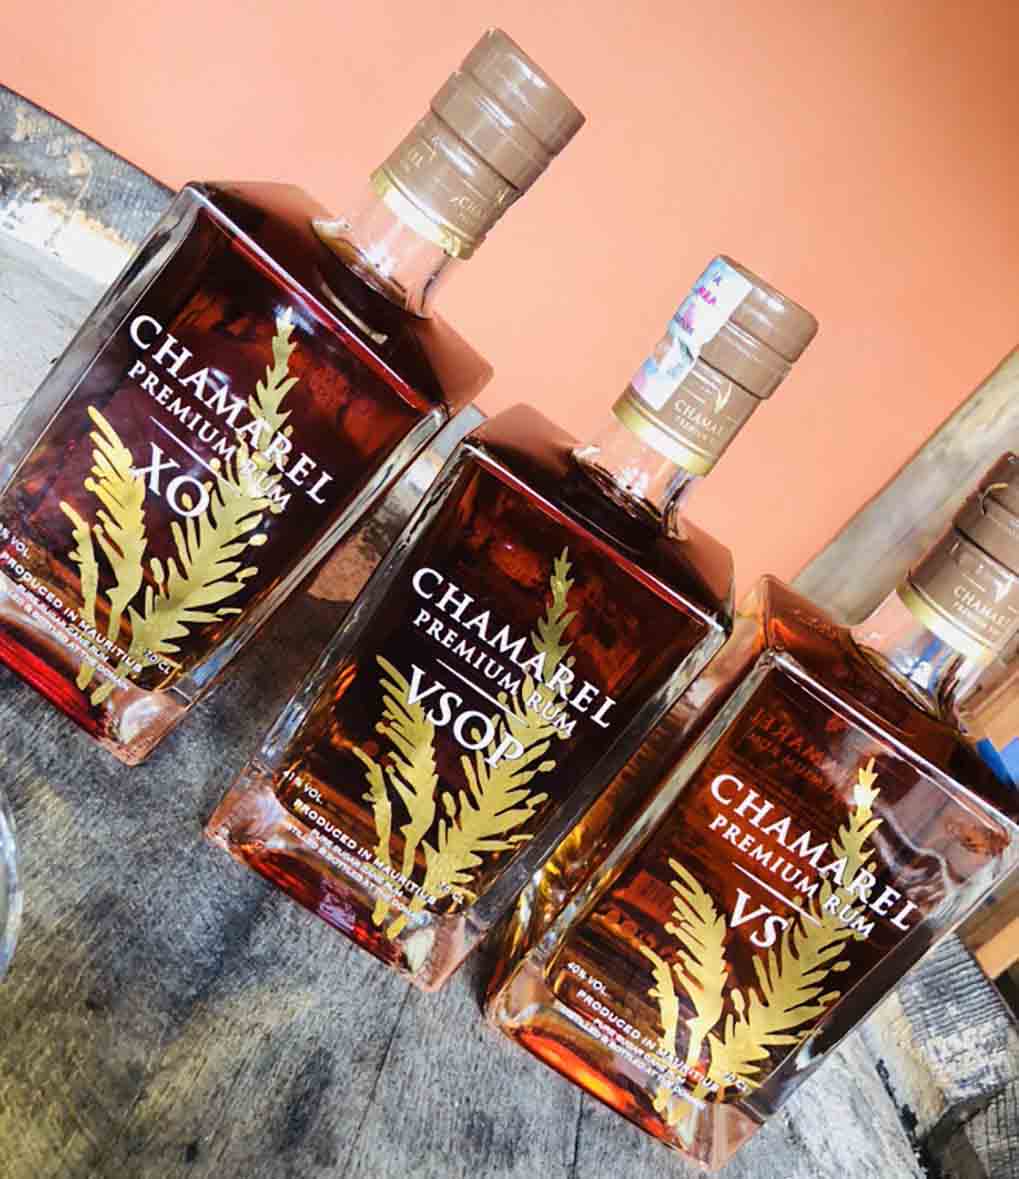 Chamarel Rum Distillery range 3